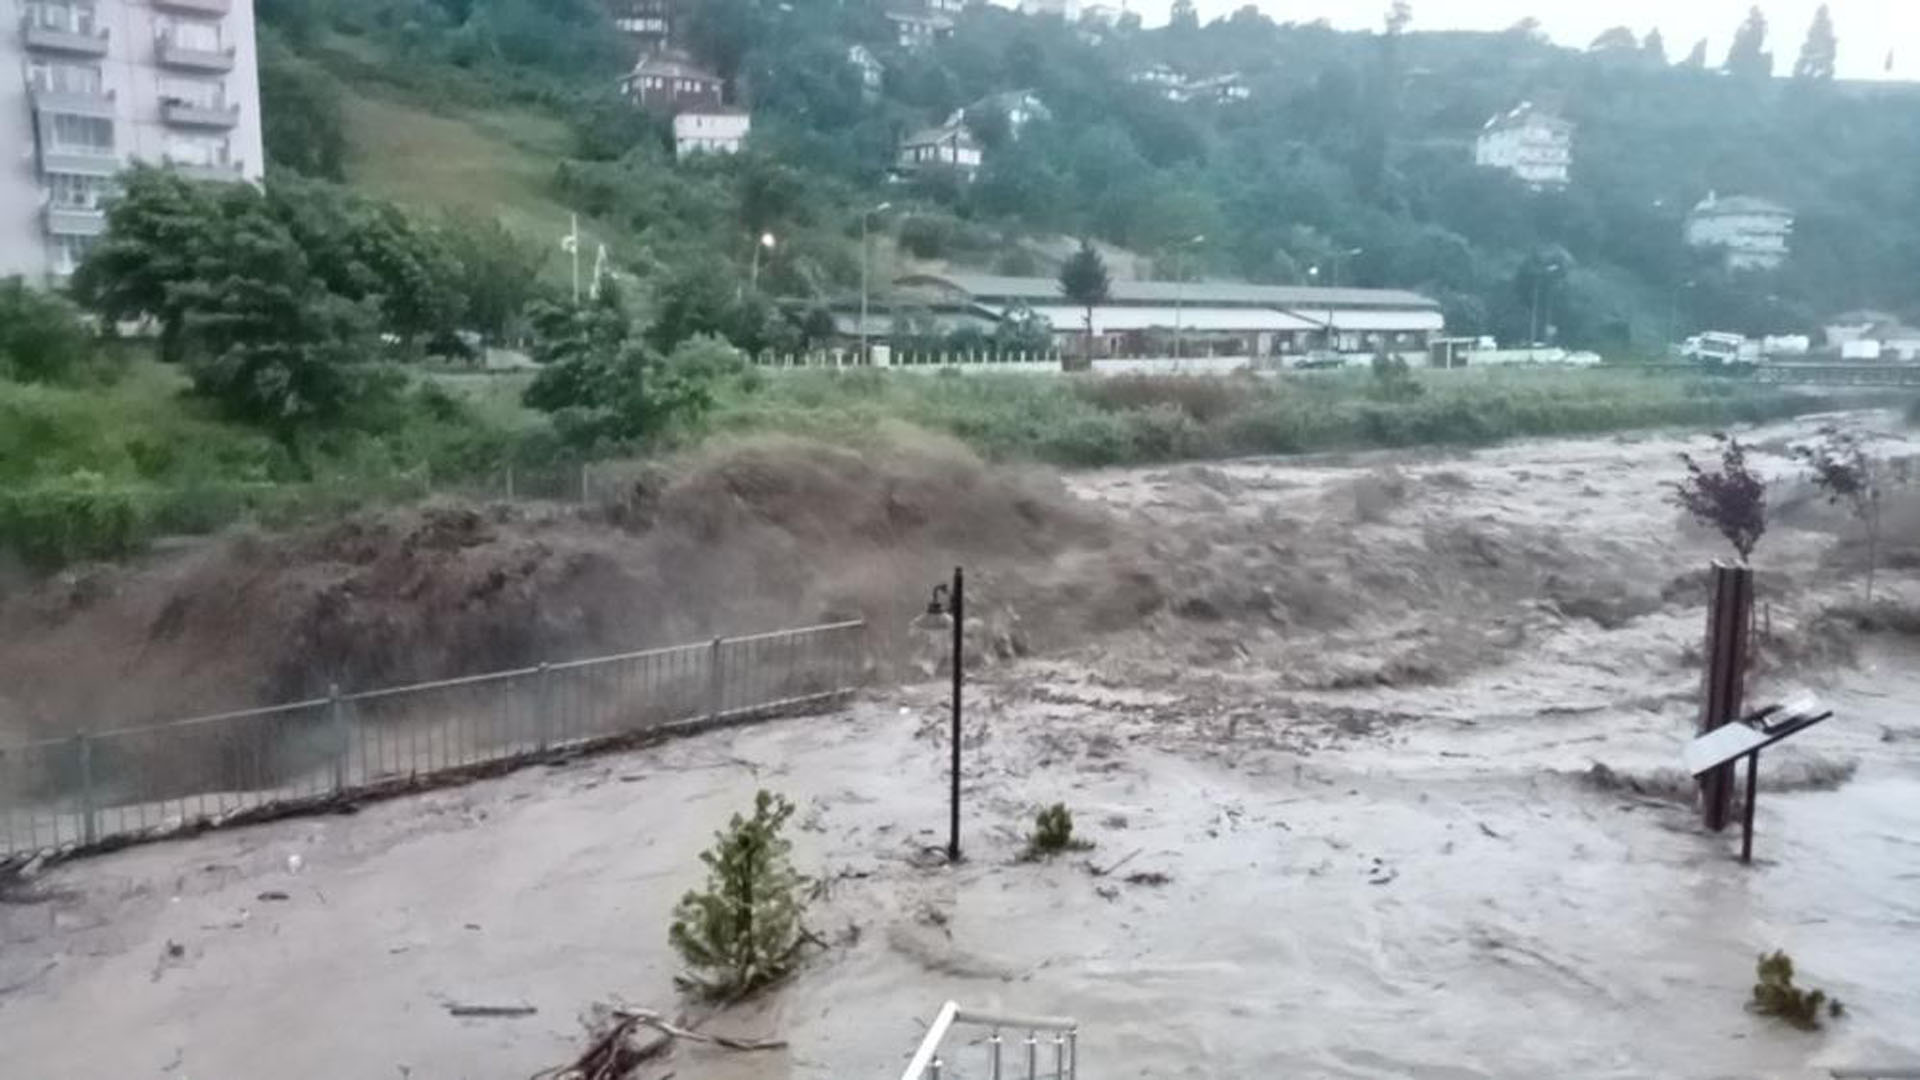 Kastamonu'da sel felaketi! Kaymakam vatandaşları uyardı! Panik yapmadan tedbirlerimizi alalım